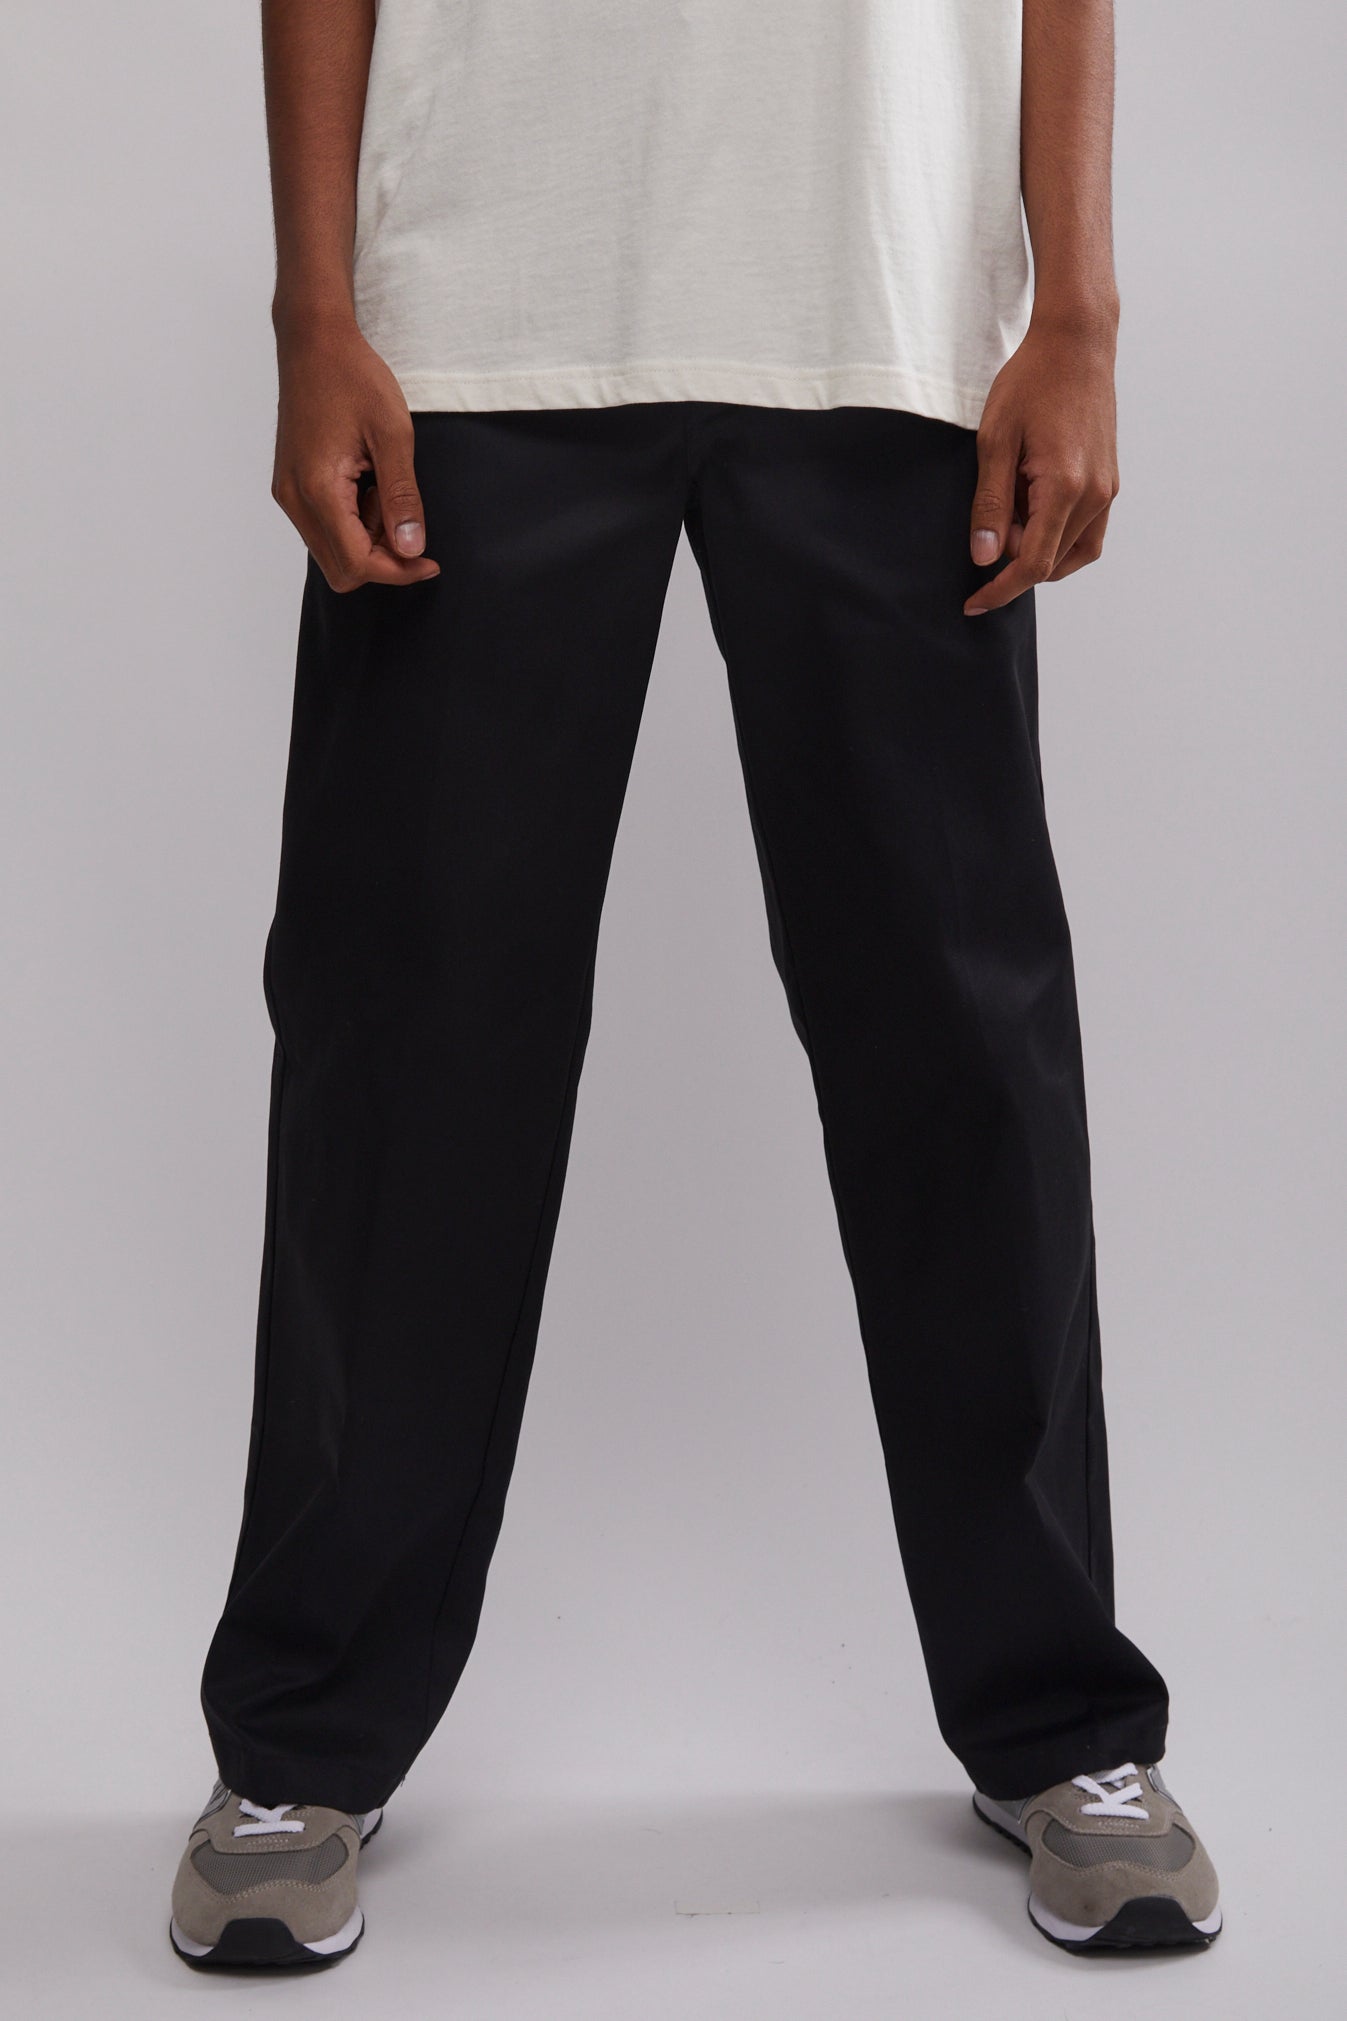 Buy Men's Cotton Lounge Wear Wear Loose Fit Pants|Cottonworld